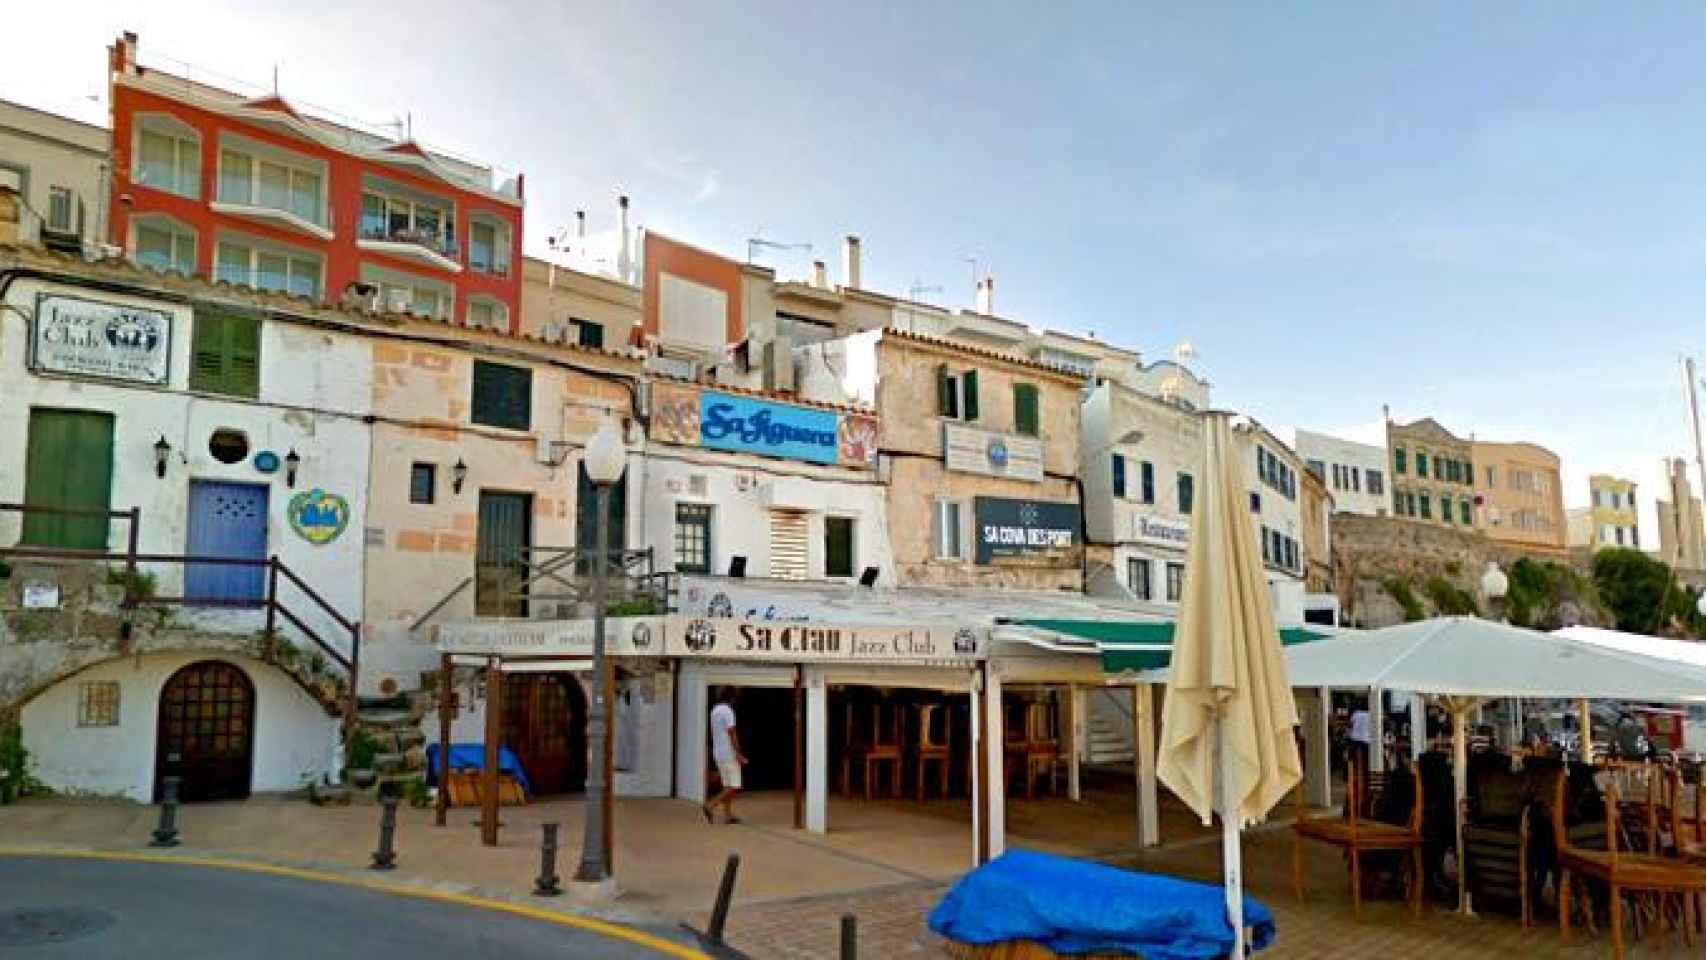 Vista de la calle Marina de Ciudadela (Menorca), donde se traslada la sede de la compañía Inver Odiseus / CG